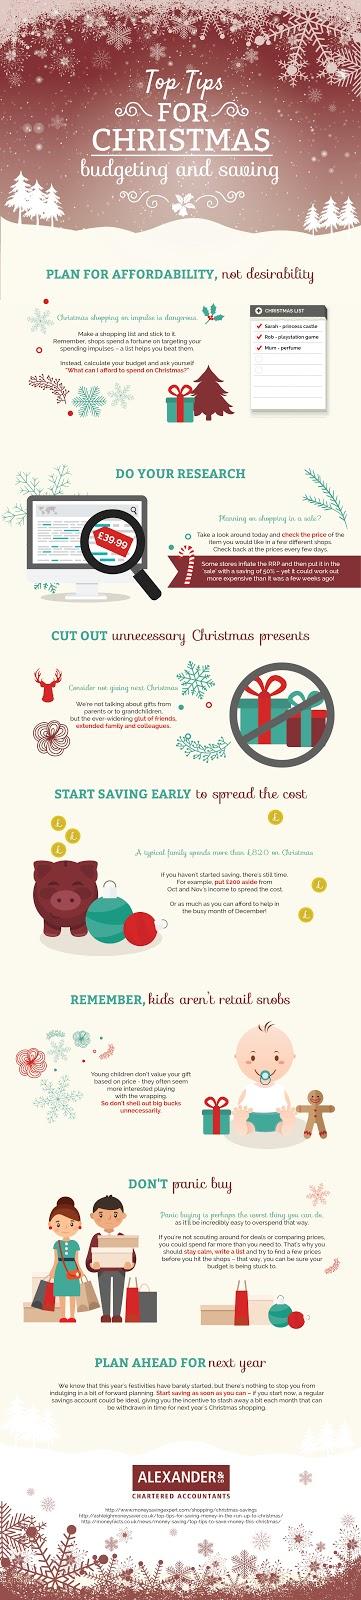 Budgeting for Christmas